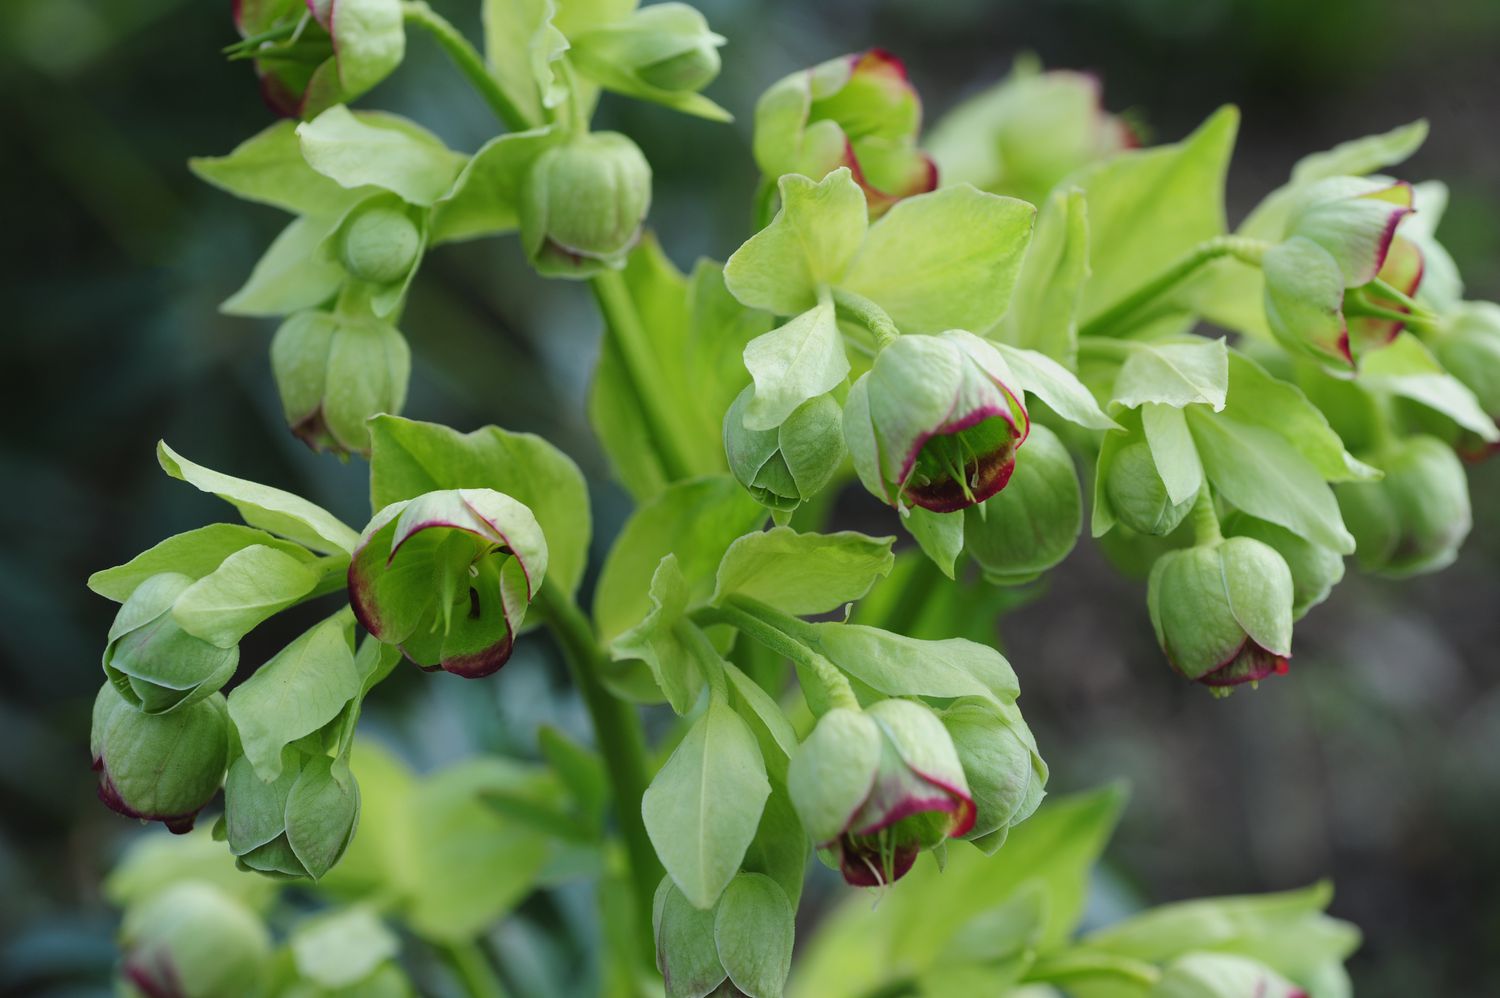 Stinkende Nieswurzpflanze mit hellgrünen schalenförmigen Blüten in Traube in Nahaufnahme